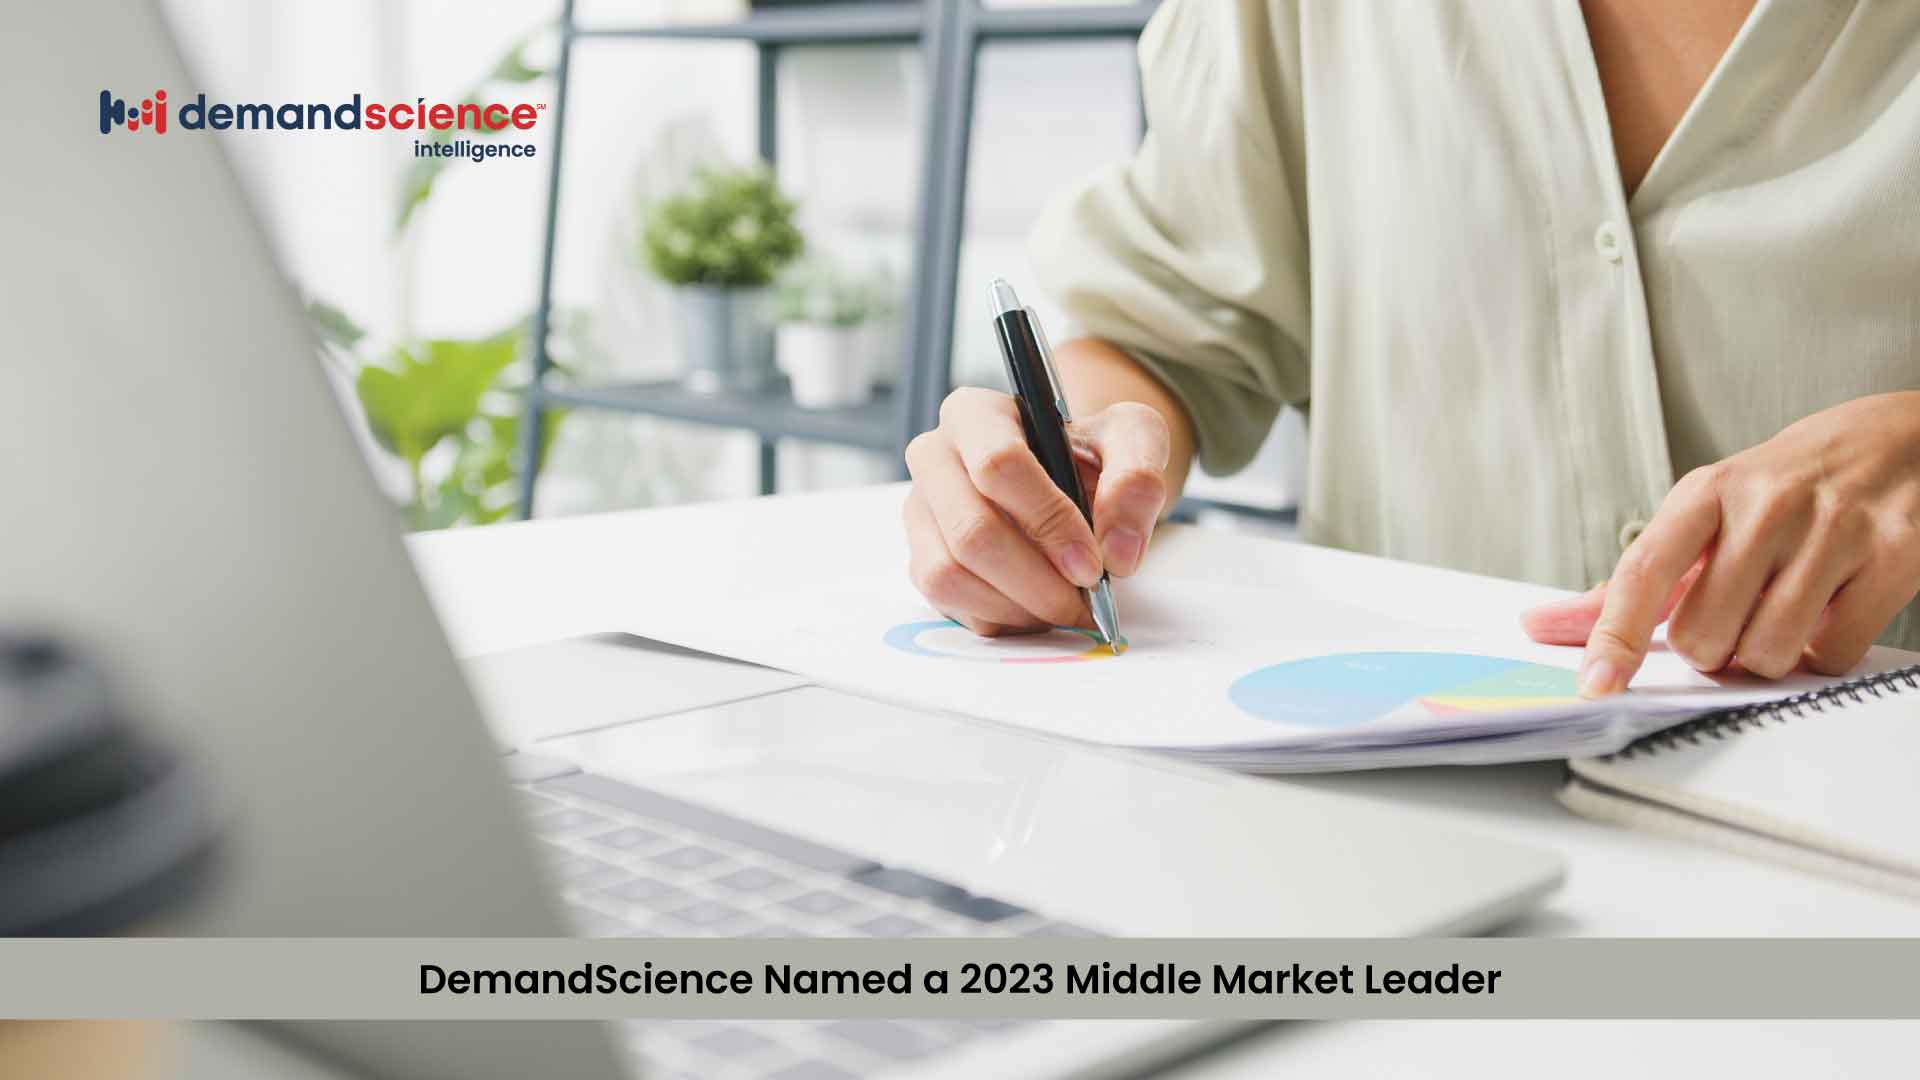 DemandScience Named a 2023 Middle Market Leader